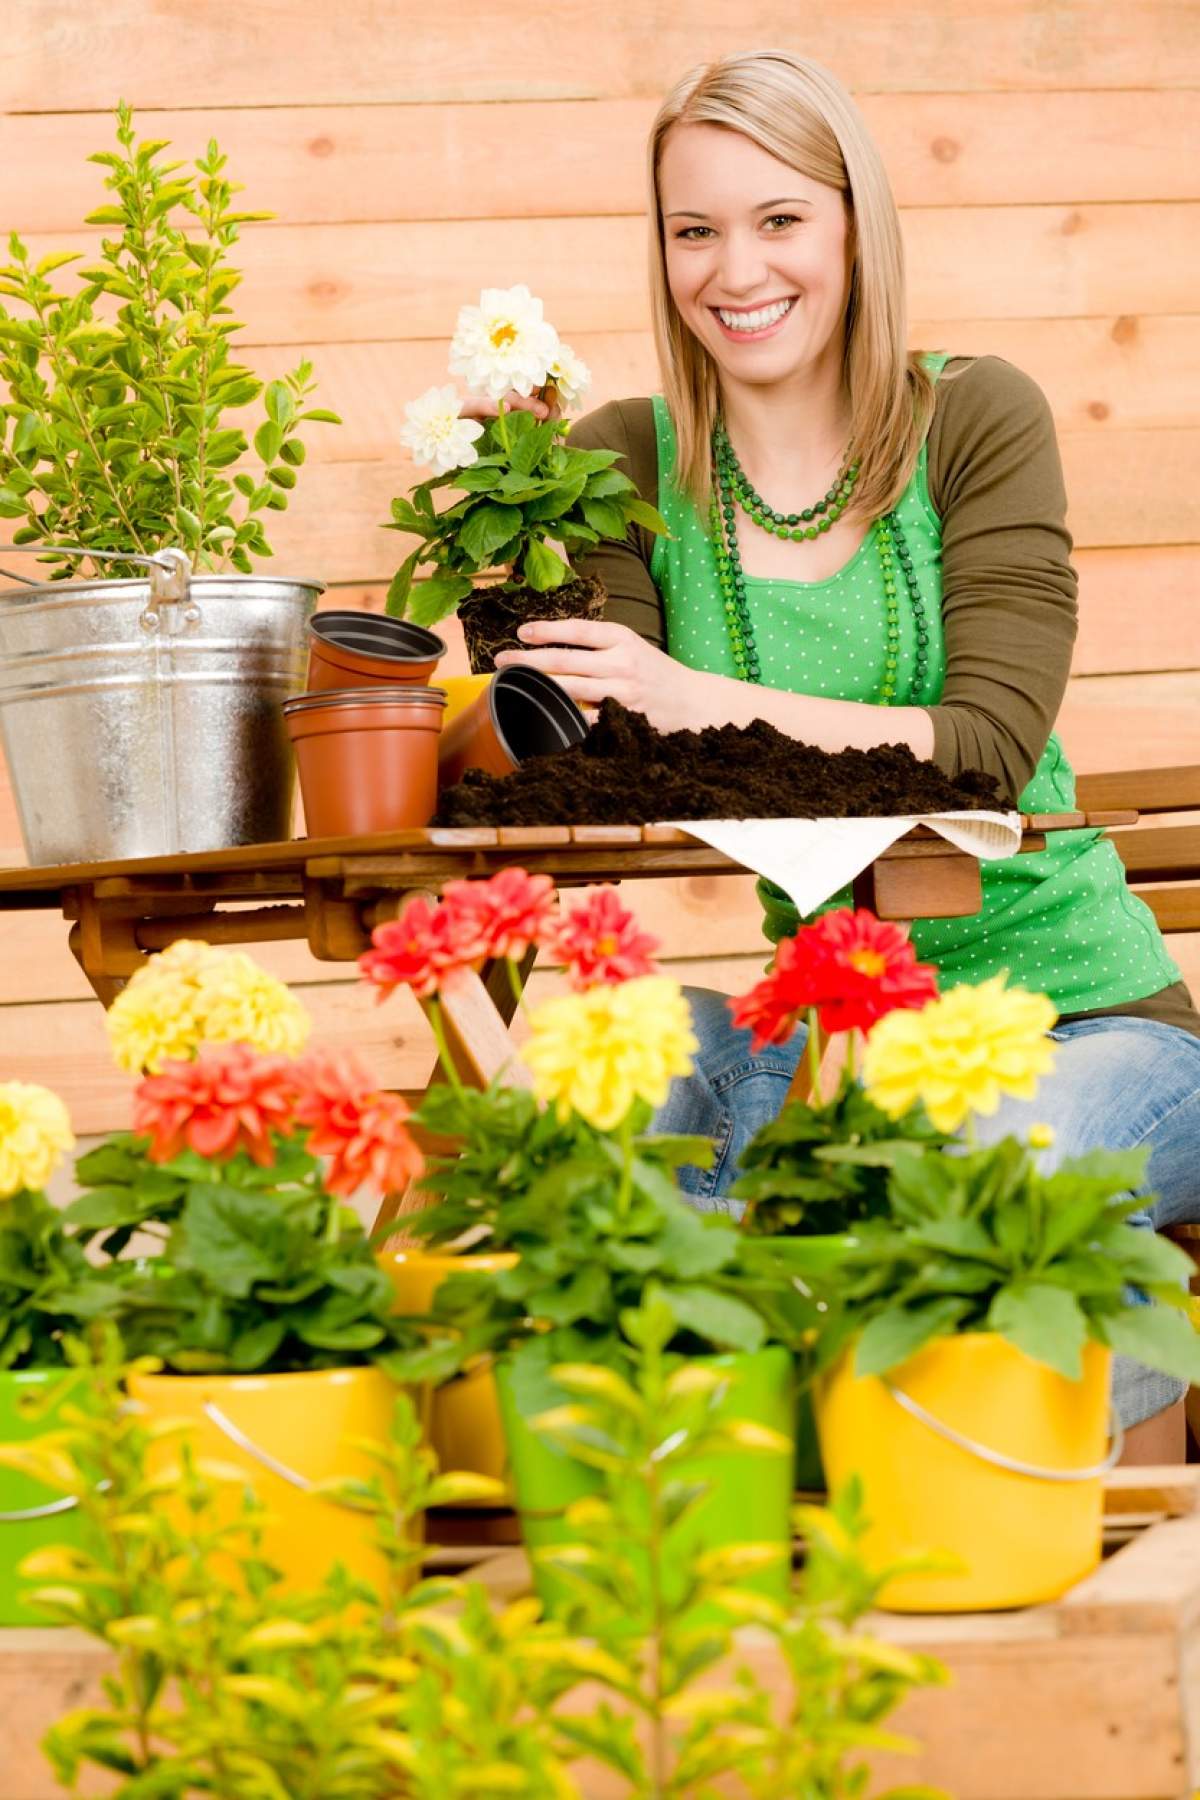 Fotografie cu o femeie care are grijă de plantele din ghivece